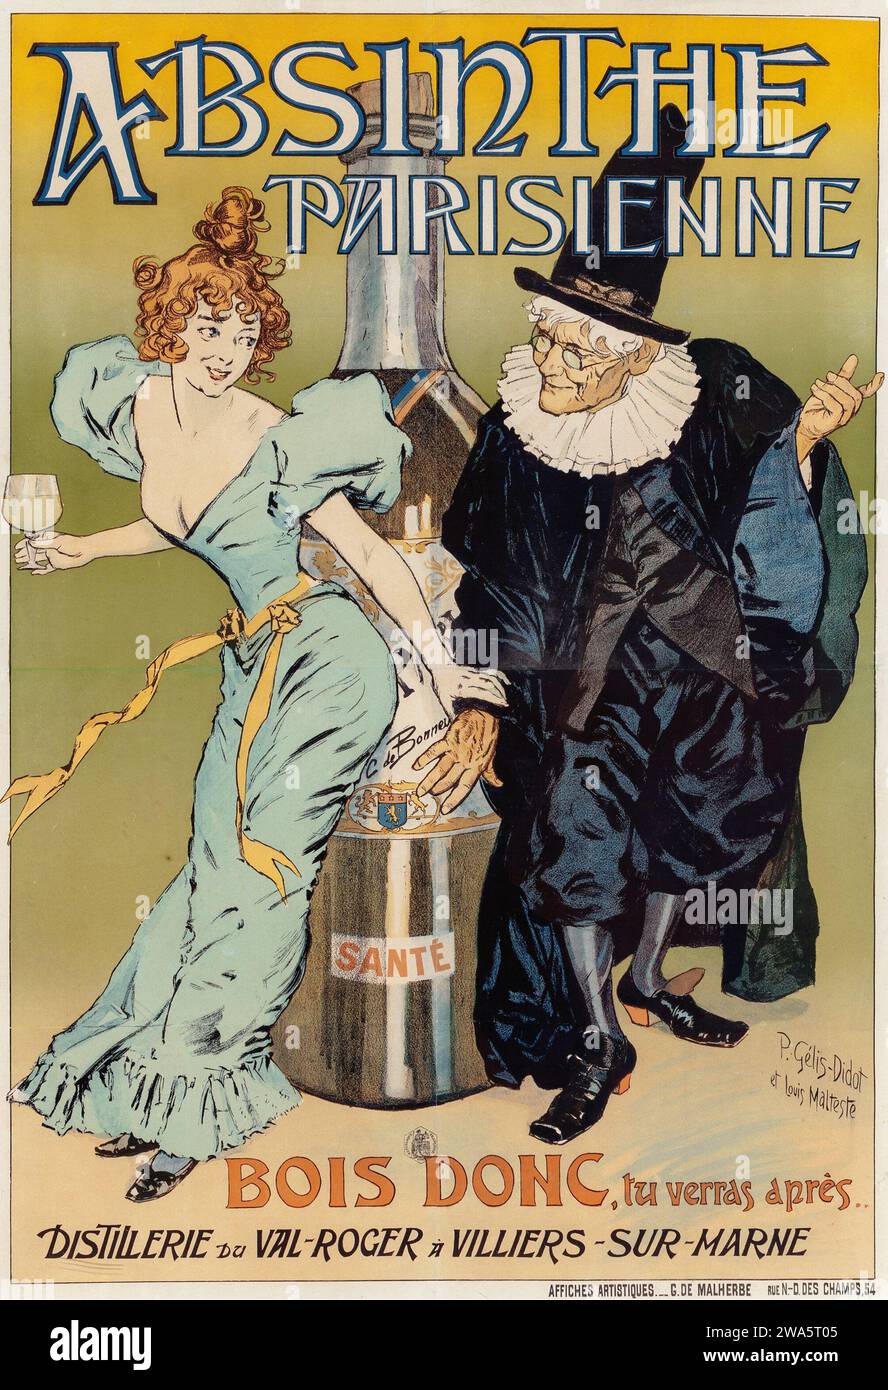 Absinthe parisienne, 1894 - Publicité d'alcool vintage - P. GELIS-DIDOT Artwork (français, 19e siècle) et LOUIS MALTESE (français). Banque D'Images